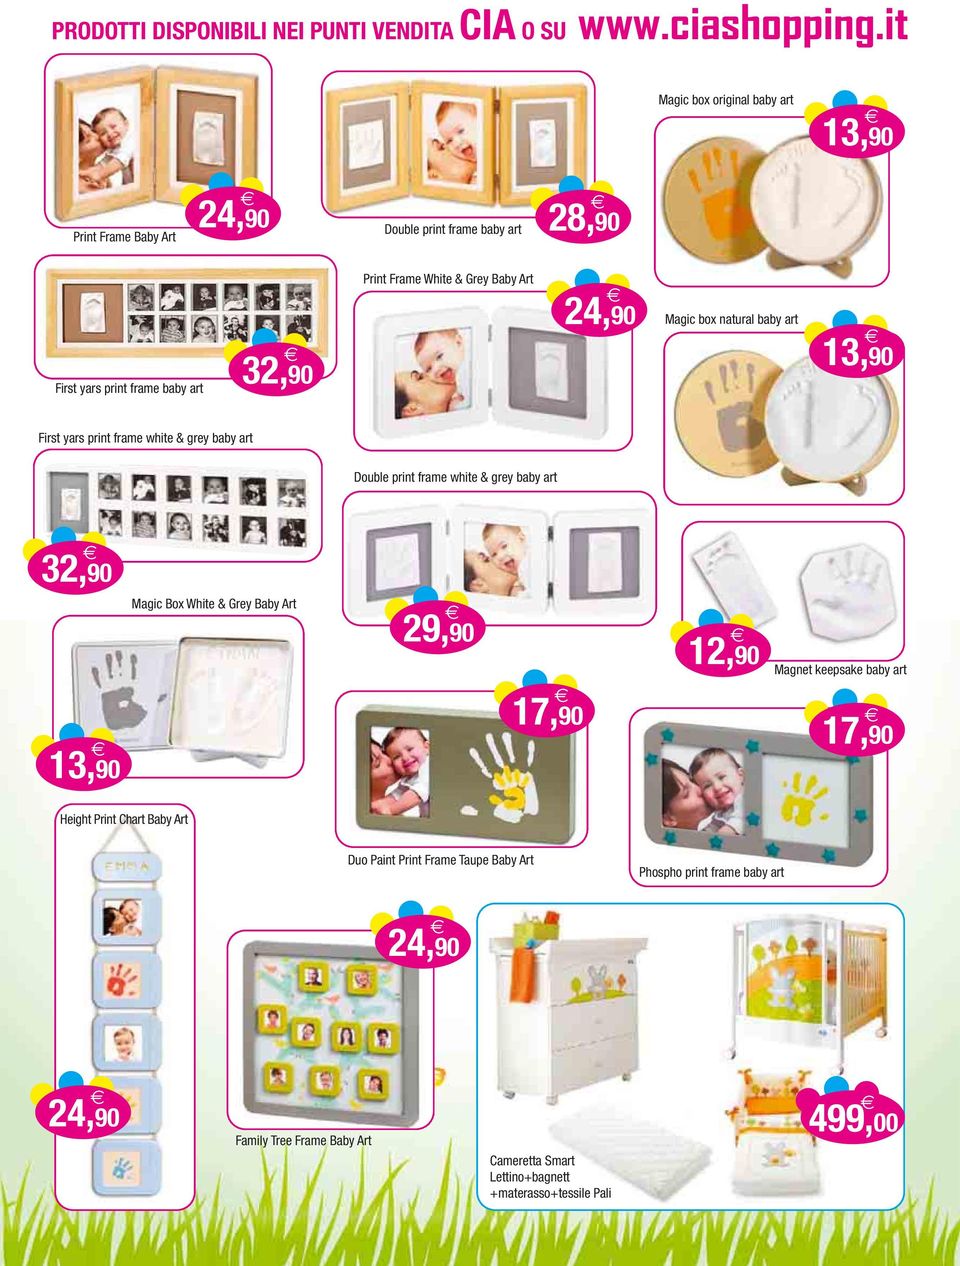 art 32,90 13,90 Magic Box White & Grey Baby Art 29,90 17,90 12,90 Magnet keepsake baby art 17,90 Height Print Chart Baby Art Duo Paint